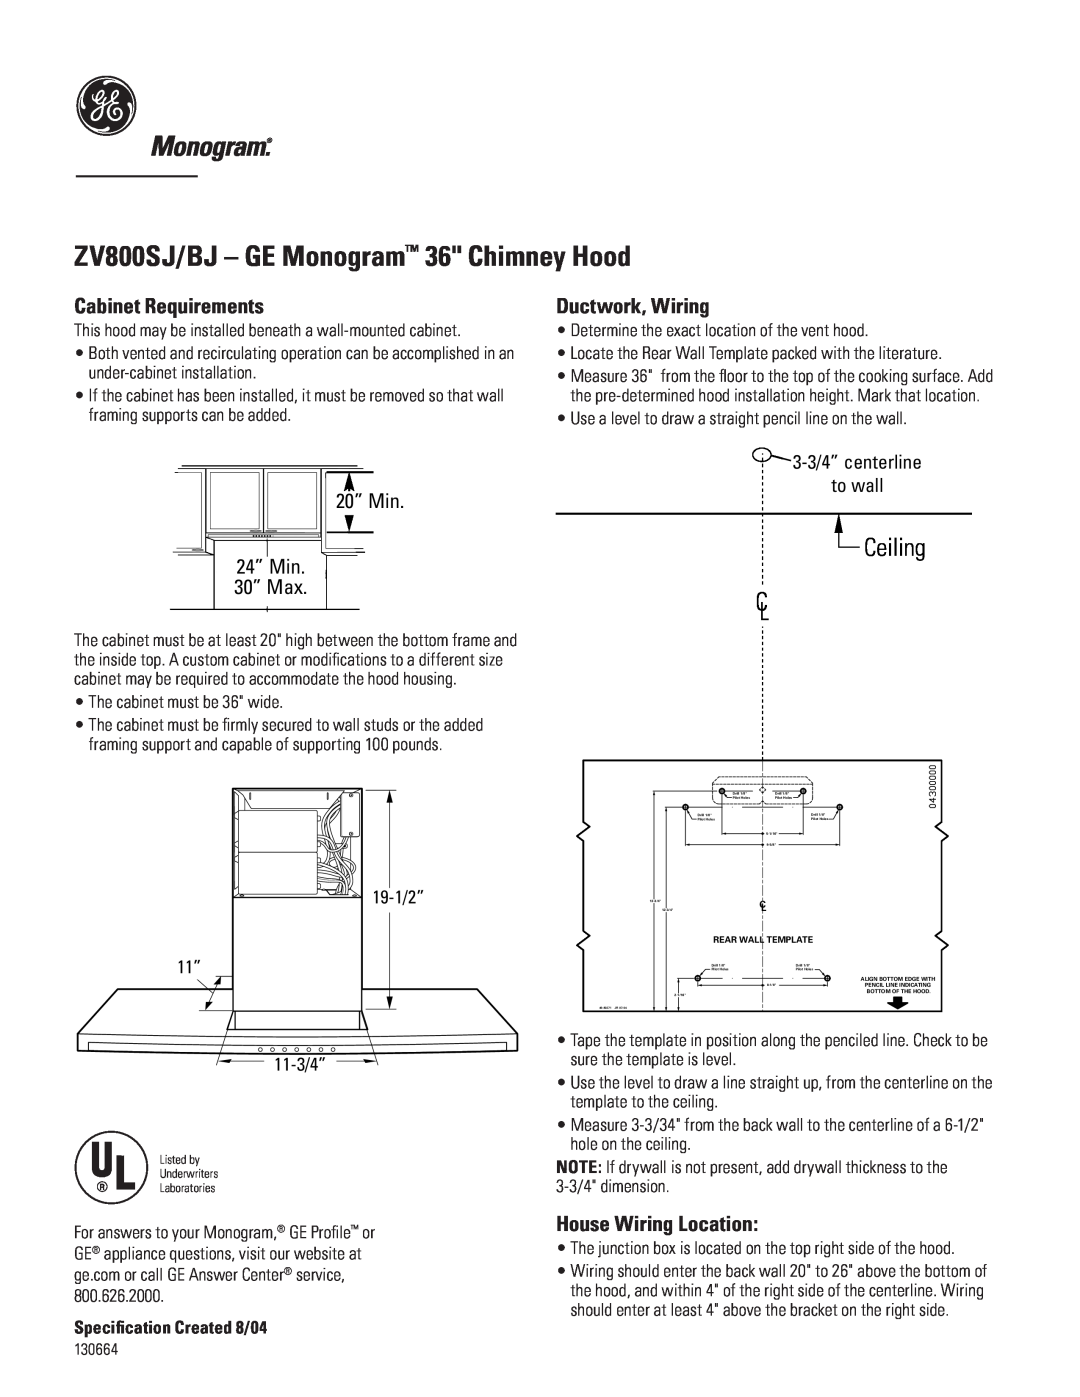 GE Monogram dimensions ZV800SJ/BJ - GE Monogram 36 Chimney Hood, Ceiling, Cabinet Requirements, Ductwork, Wiring 